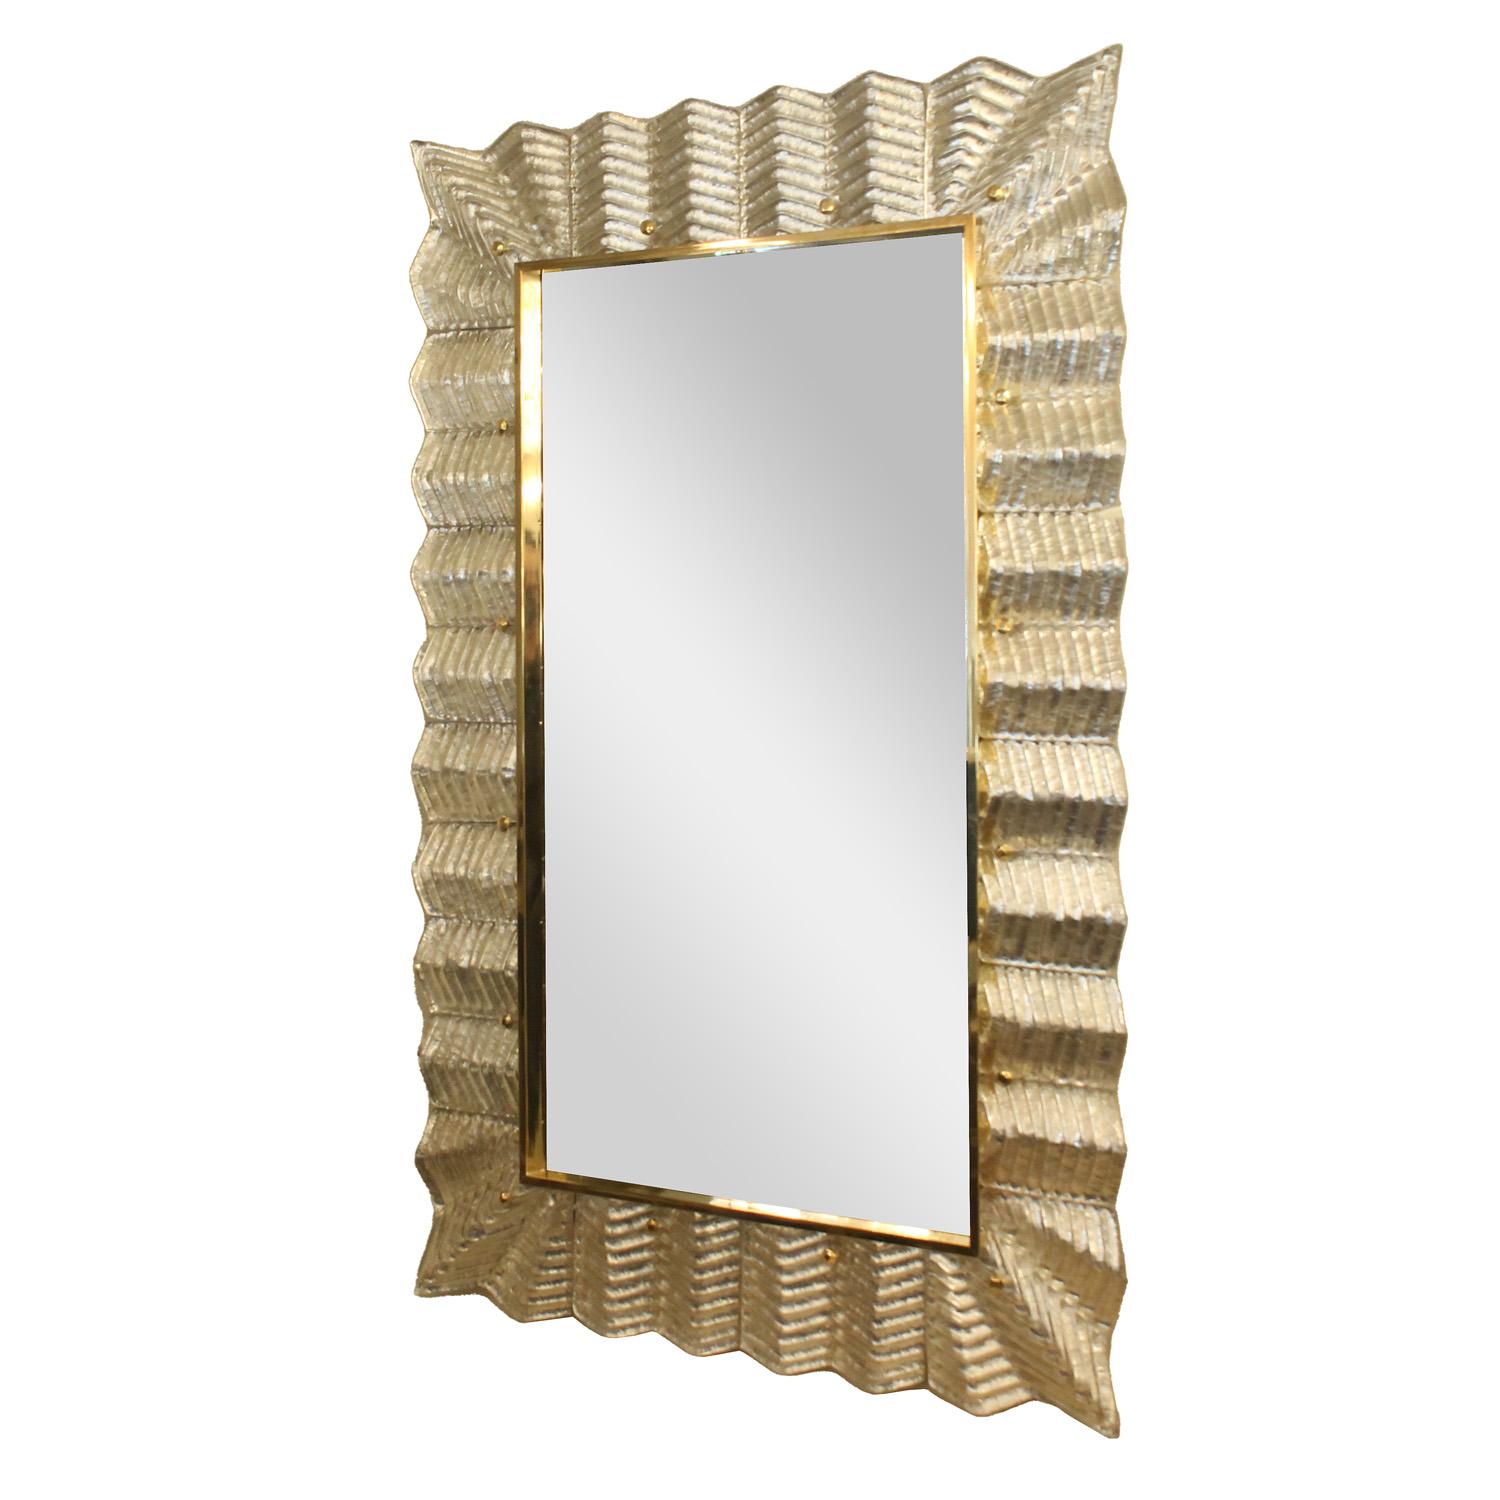 
Superbe miroir encadré de feuilles d'argent et de verre strié transparent de Murano, avec des détails en laiton poli. Italie.

 
Ce miroir est actuellement disponible tel que présenté dans notre showroom de New York.
La personnalisation des